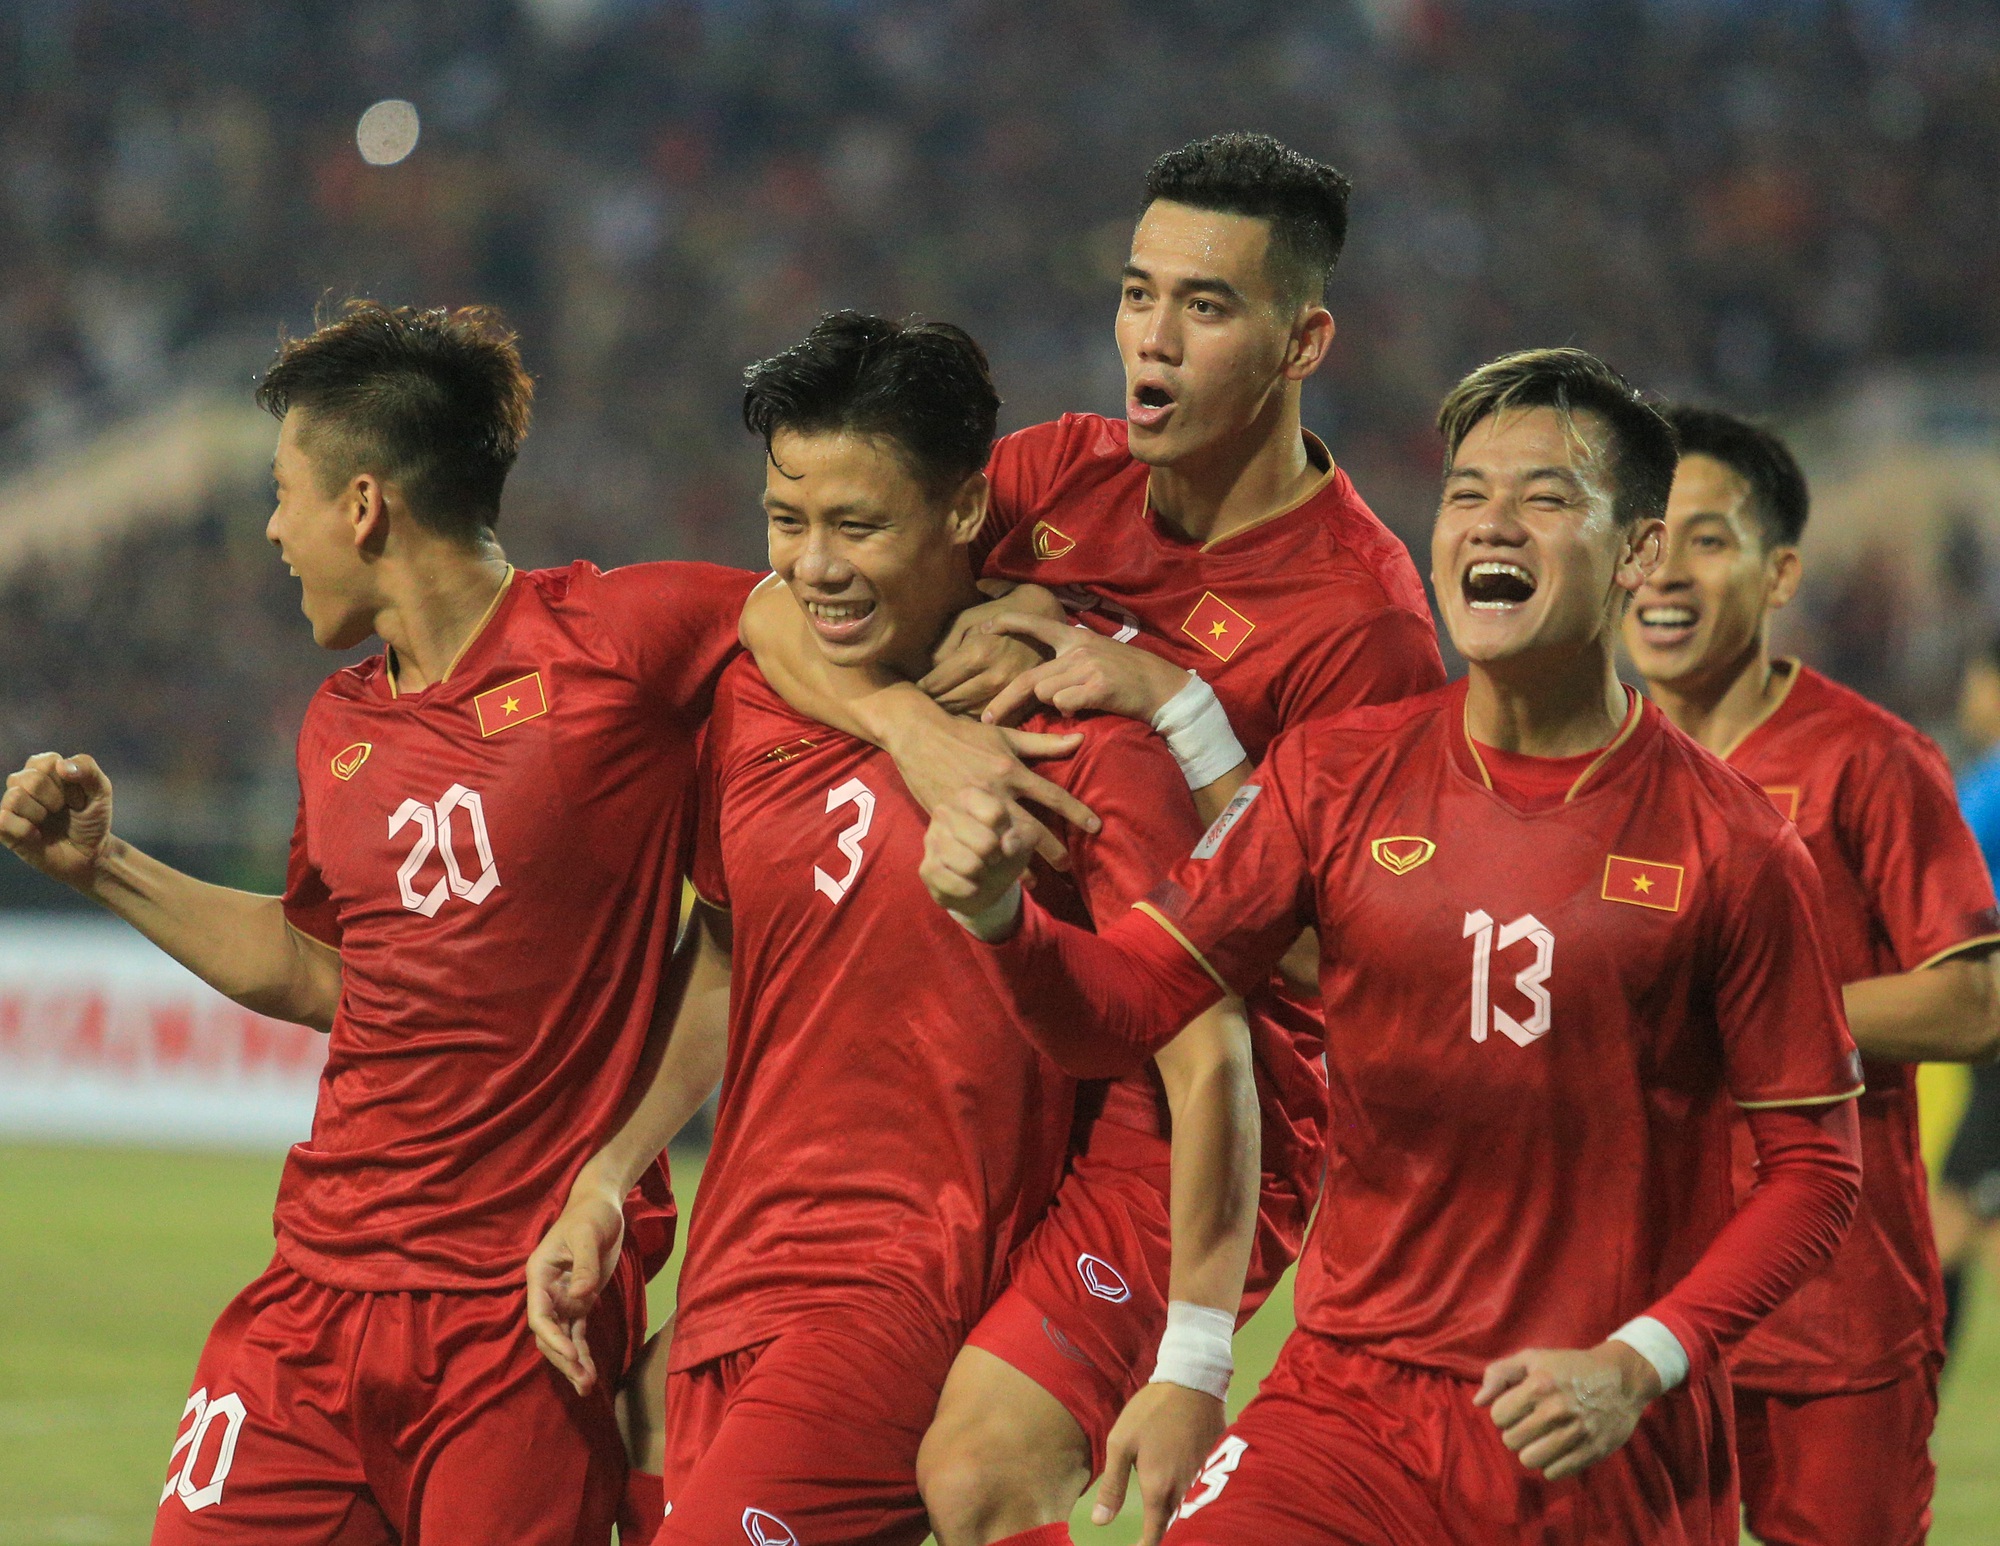 Quế Ngọc Hải ăn mừng theo phong cách của Ronaldo khi ghi bàn cho tuyển Việt Nam - Ảnh 3.